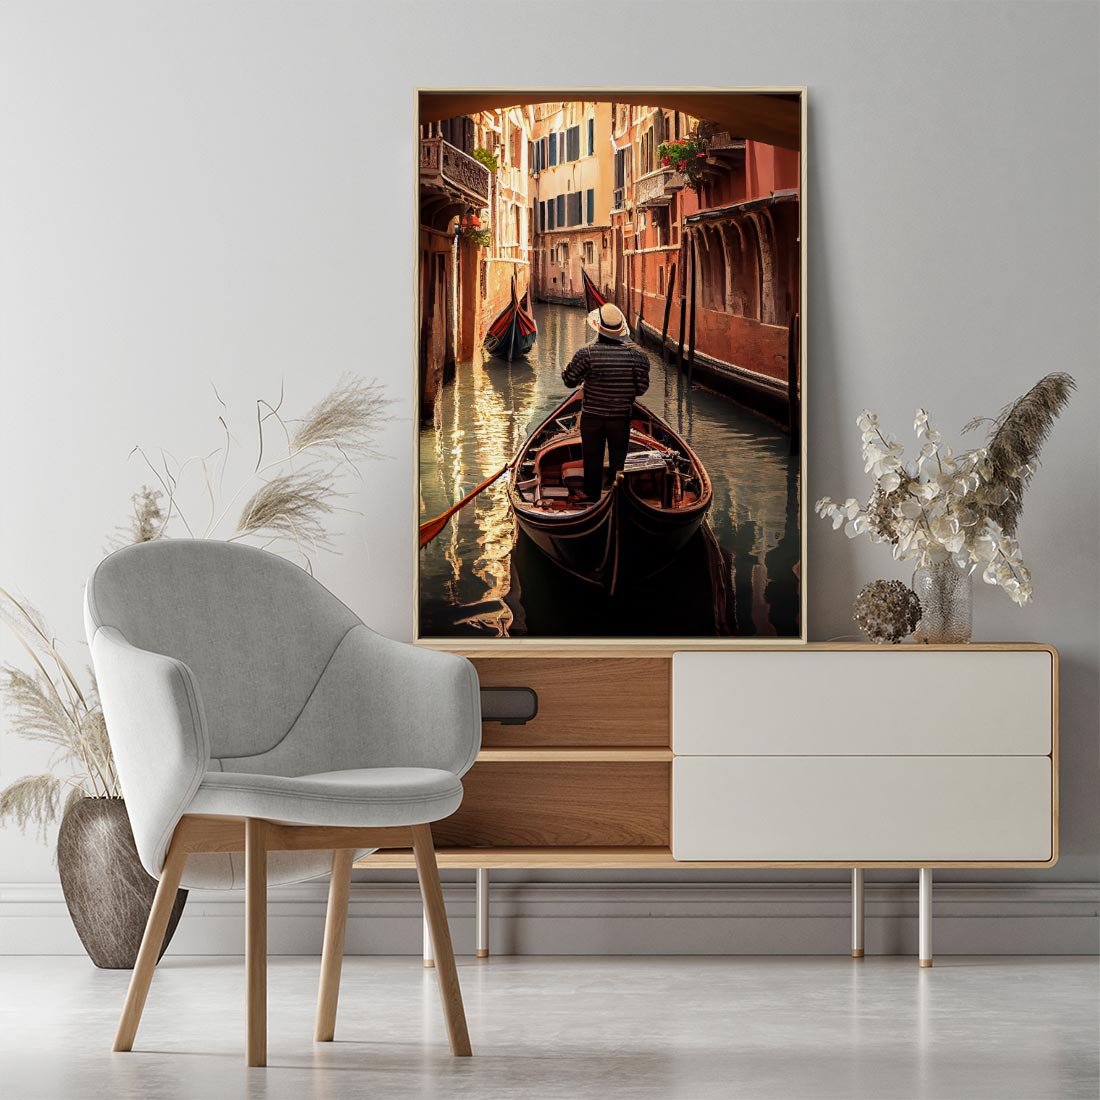 Obraz w ramie 50x70 - Spokojna Wenecja - gondolier w gondoli, kanały Wenecji - rama drewno